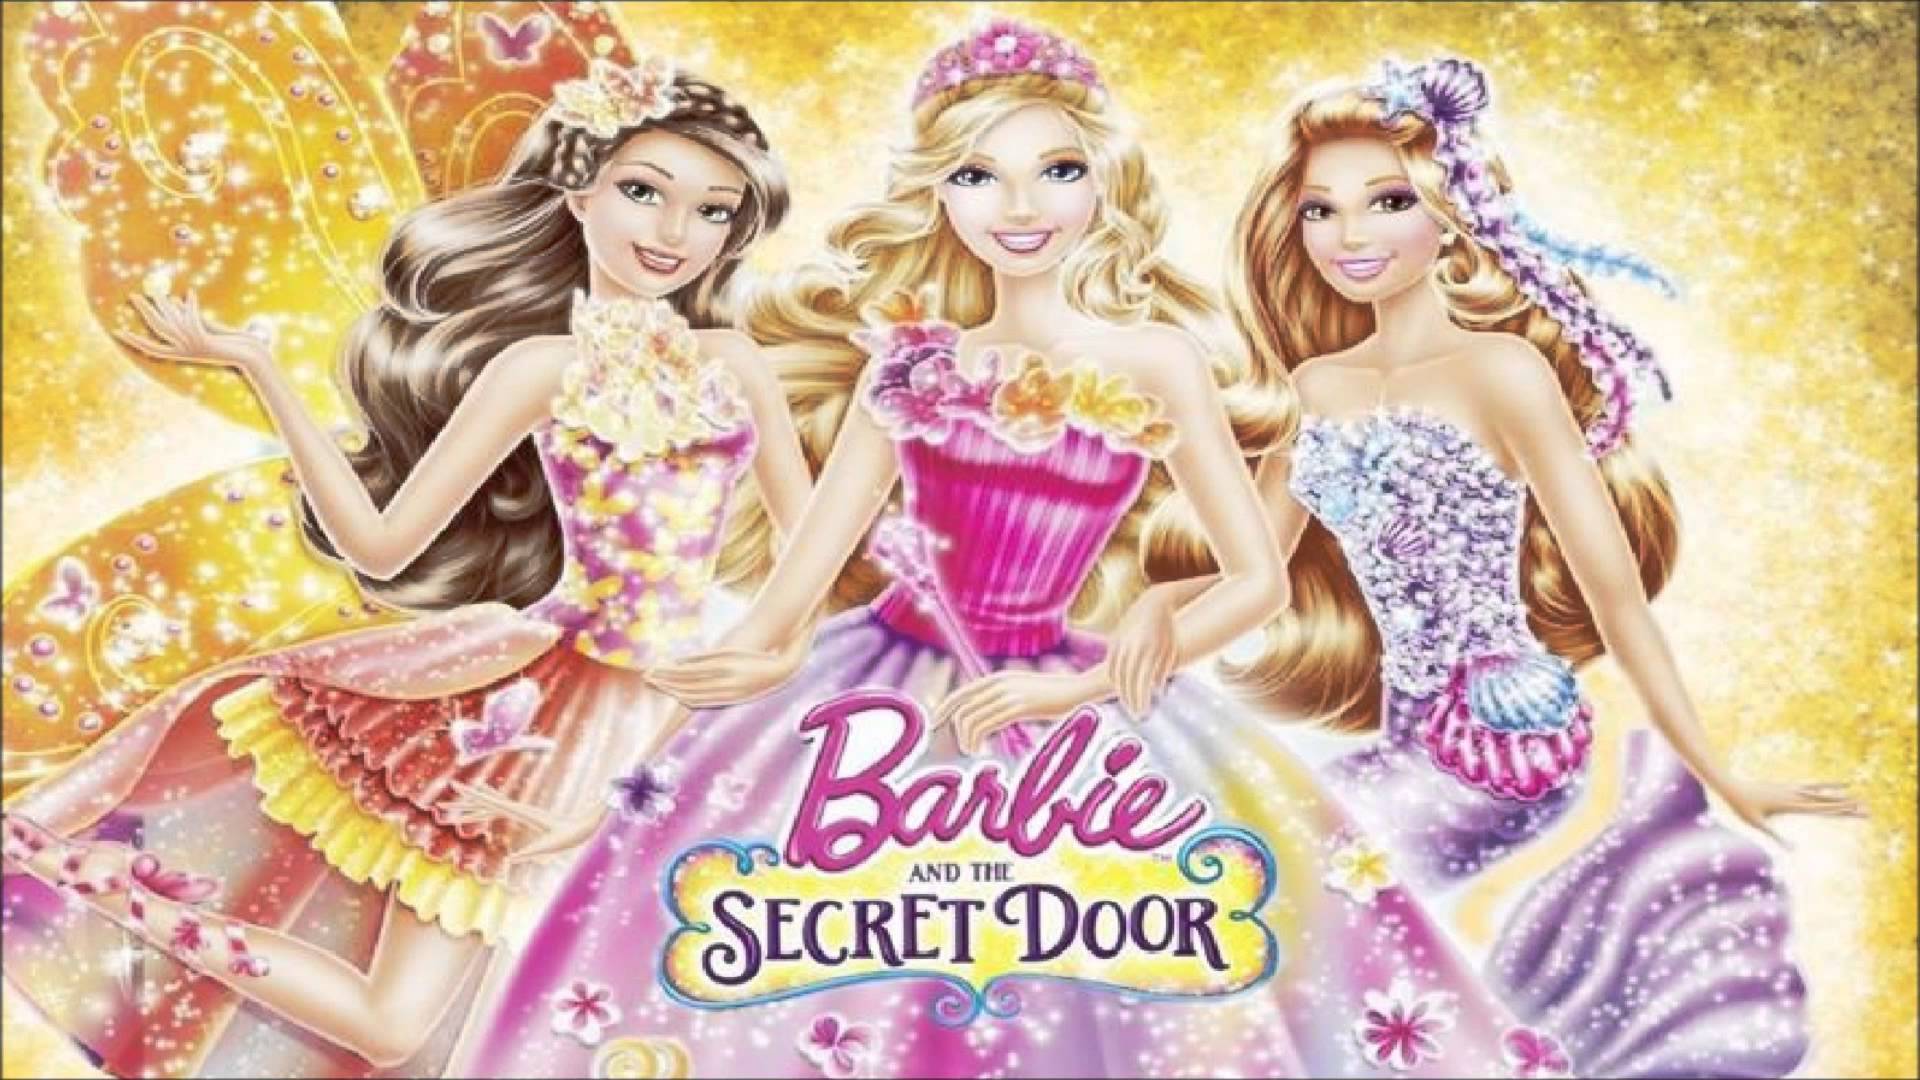 Barbie and the Secret Door / Barbie and the Secret Door (2014)